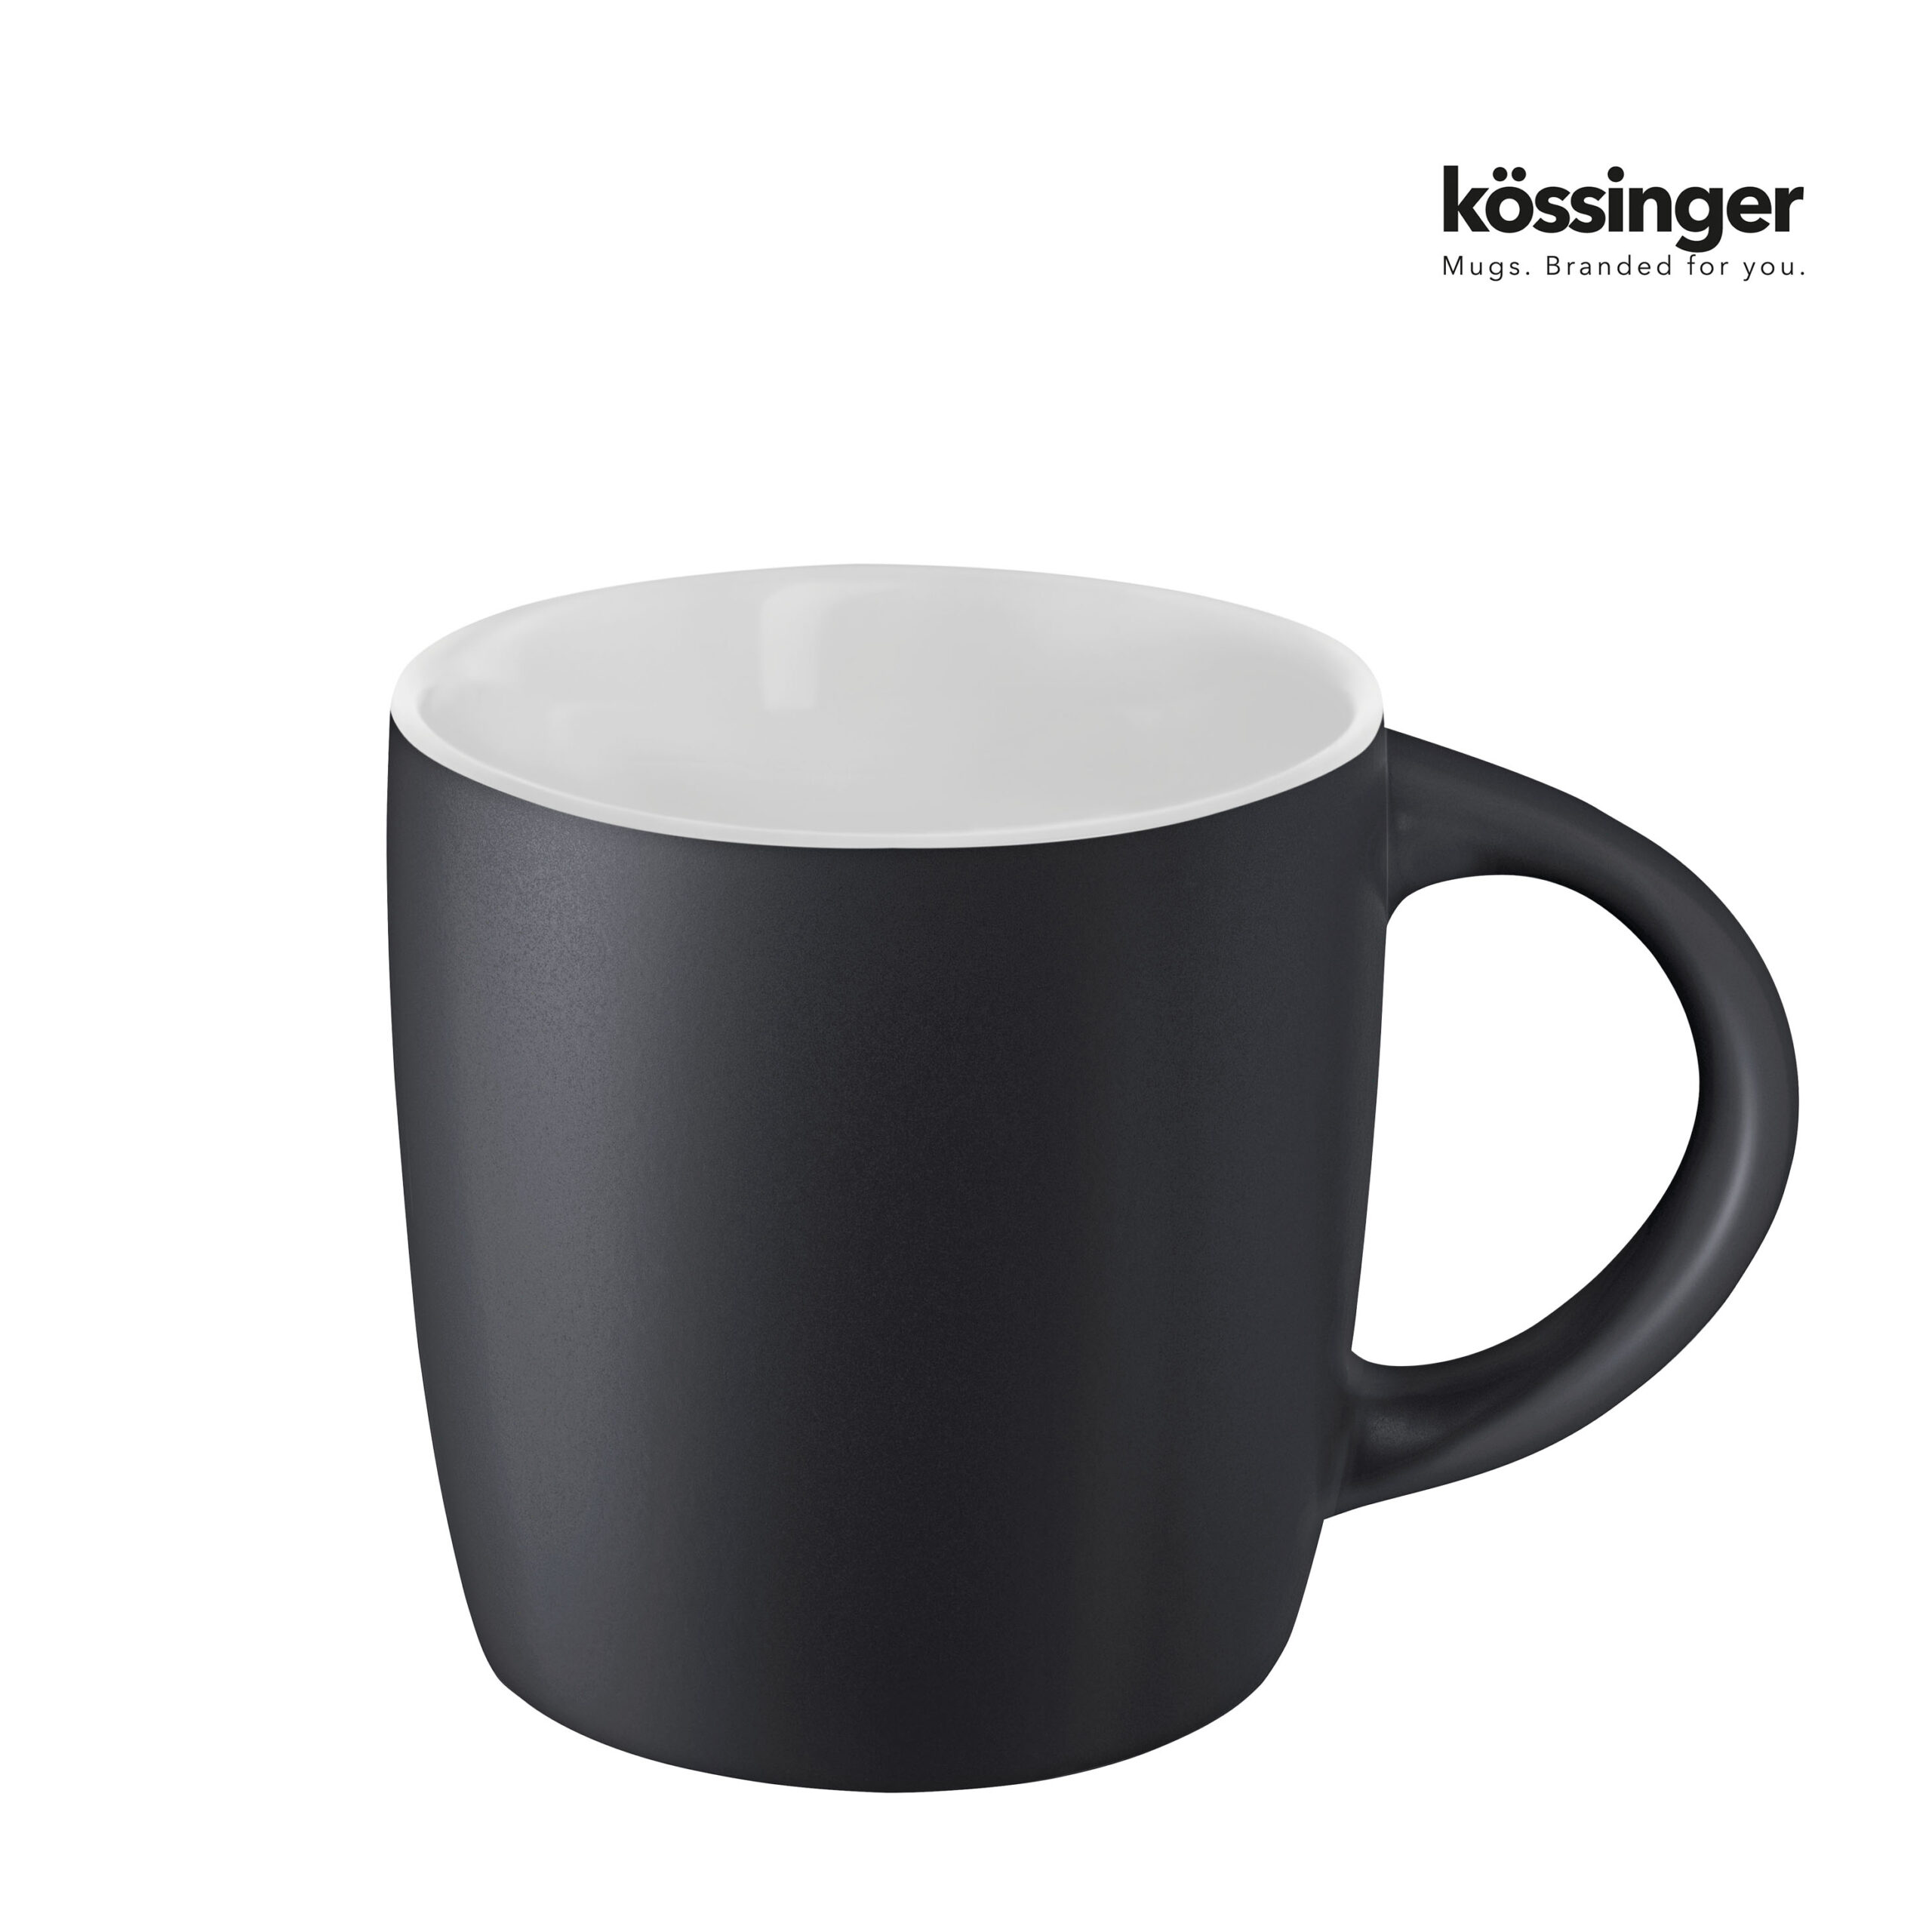 k009-koessinger-ennia-black-inside-white-2-p